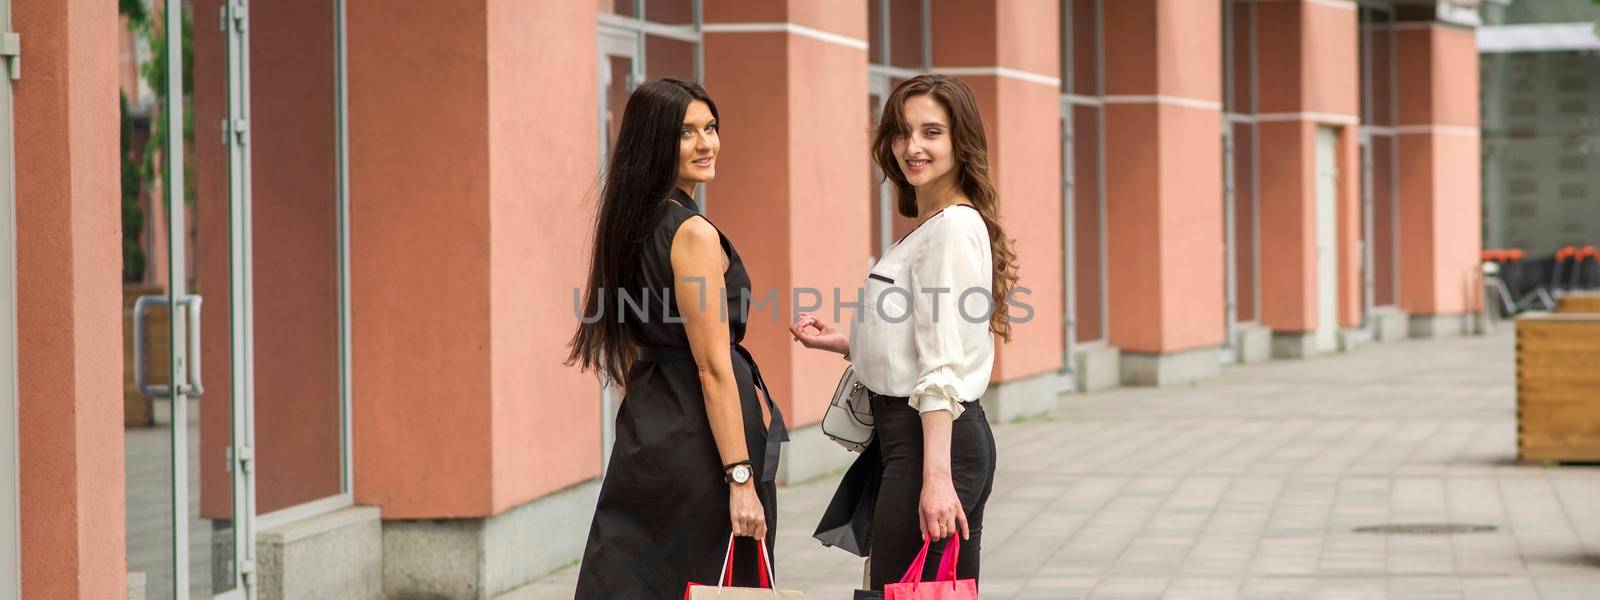 Two young women in shopping mall by okskukuruza